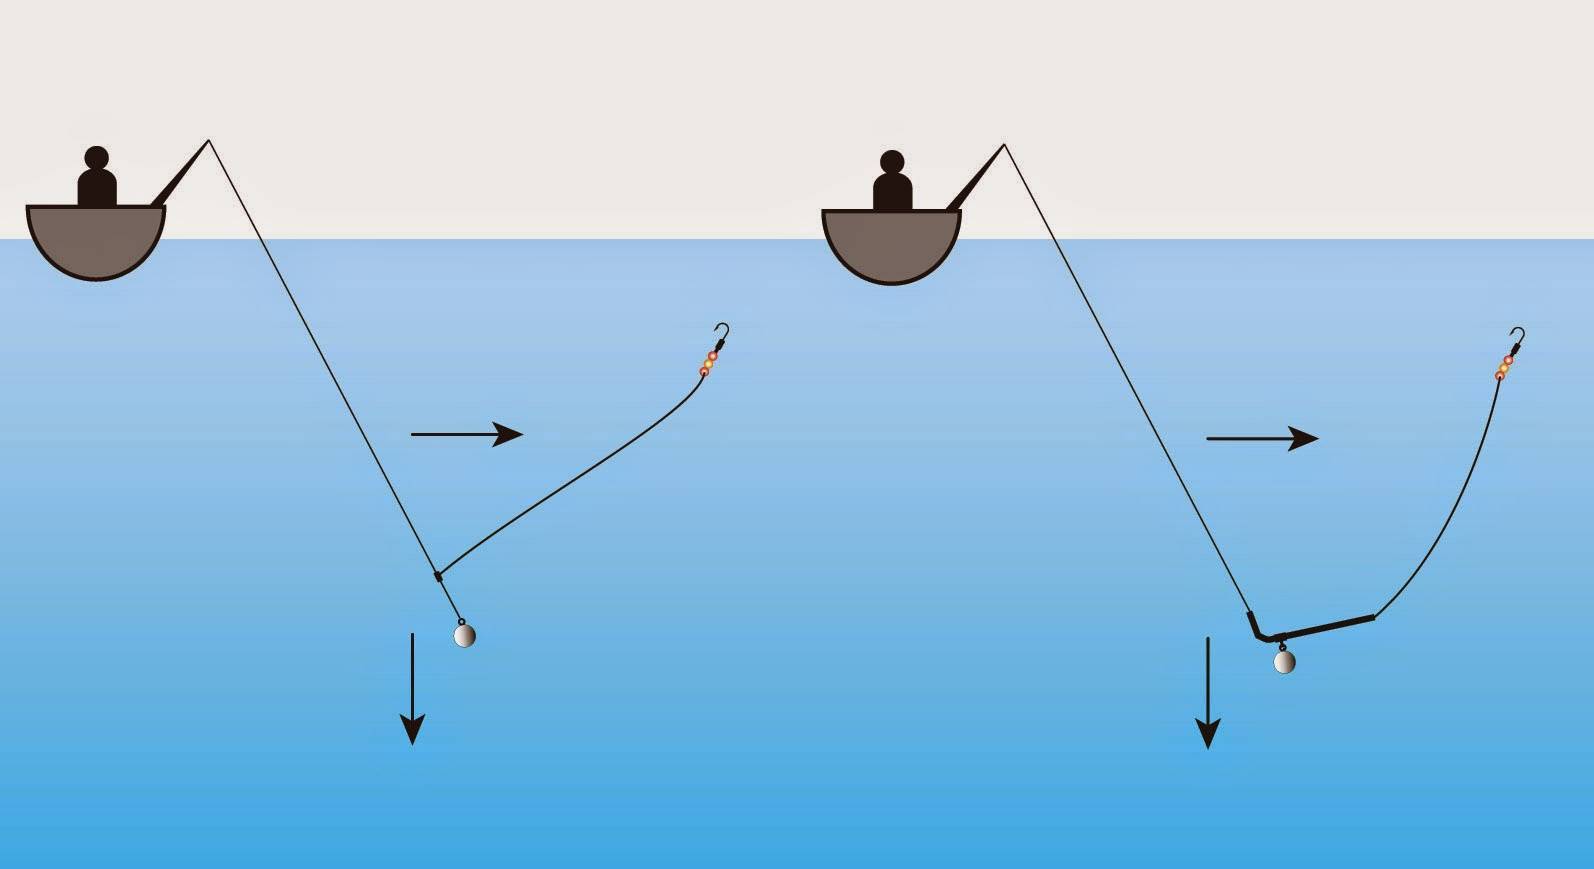 Рыбалка на спиннинг | спиннинг клаб - советы для начинающих рыбаков
как сделать донку на спиннинг: принцип монтажа, изготовление